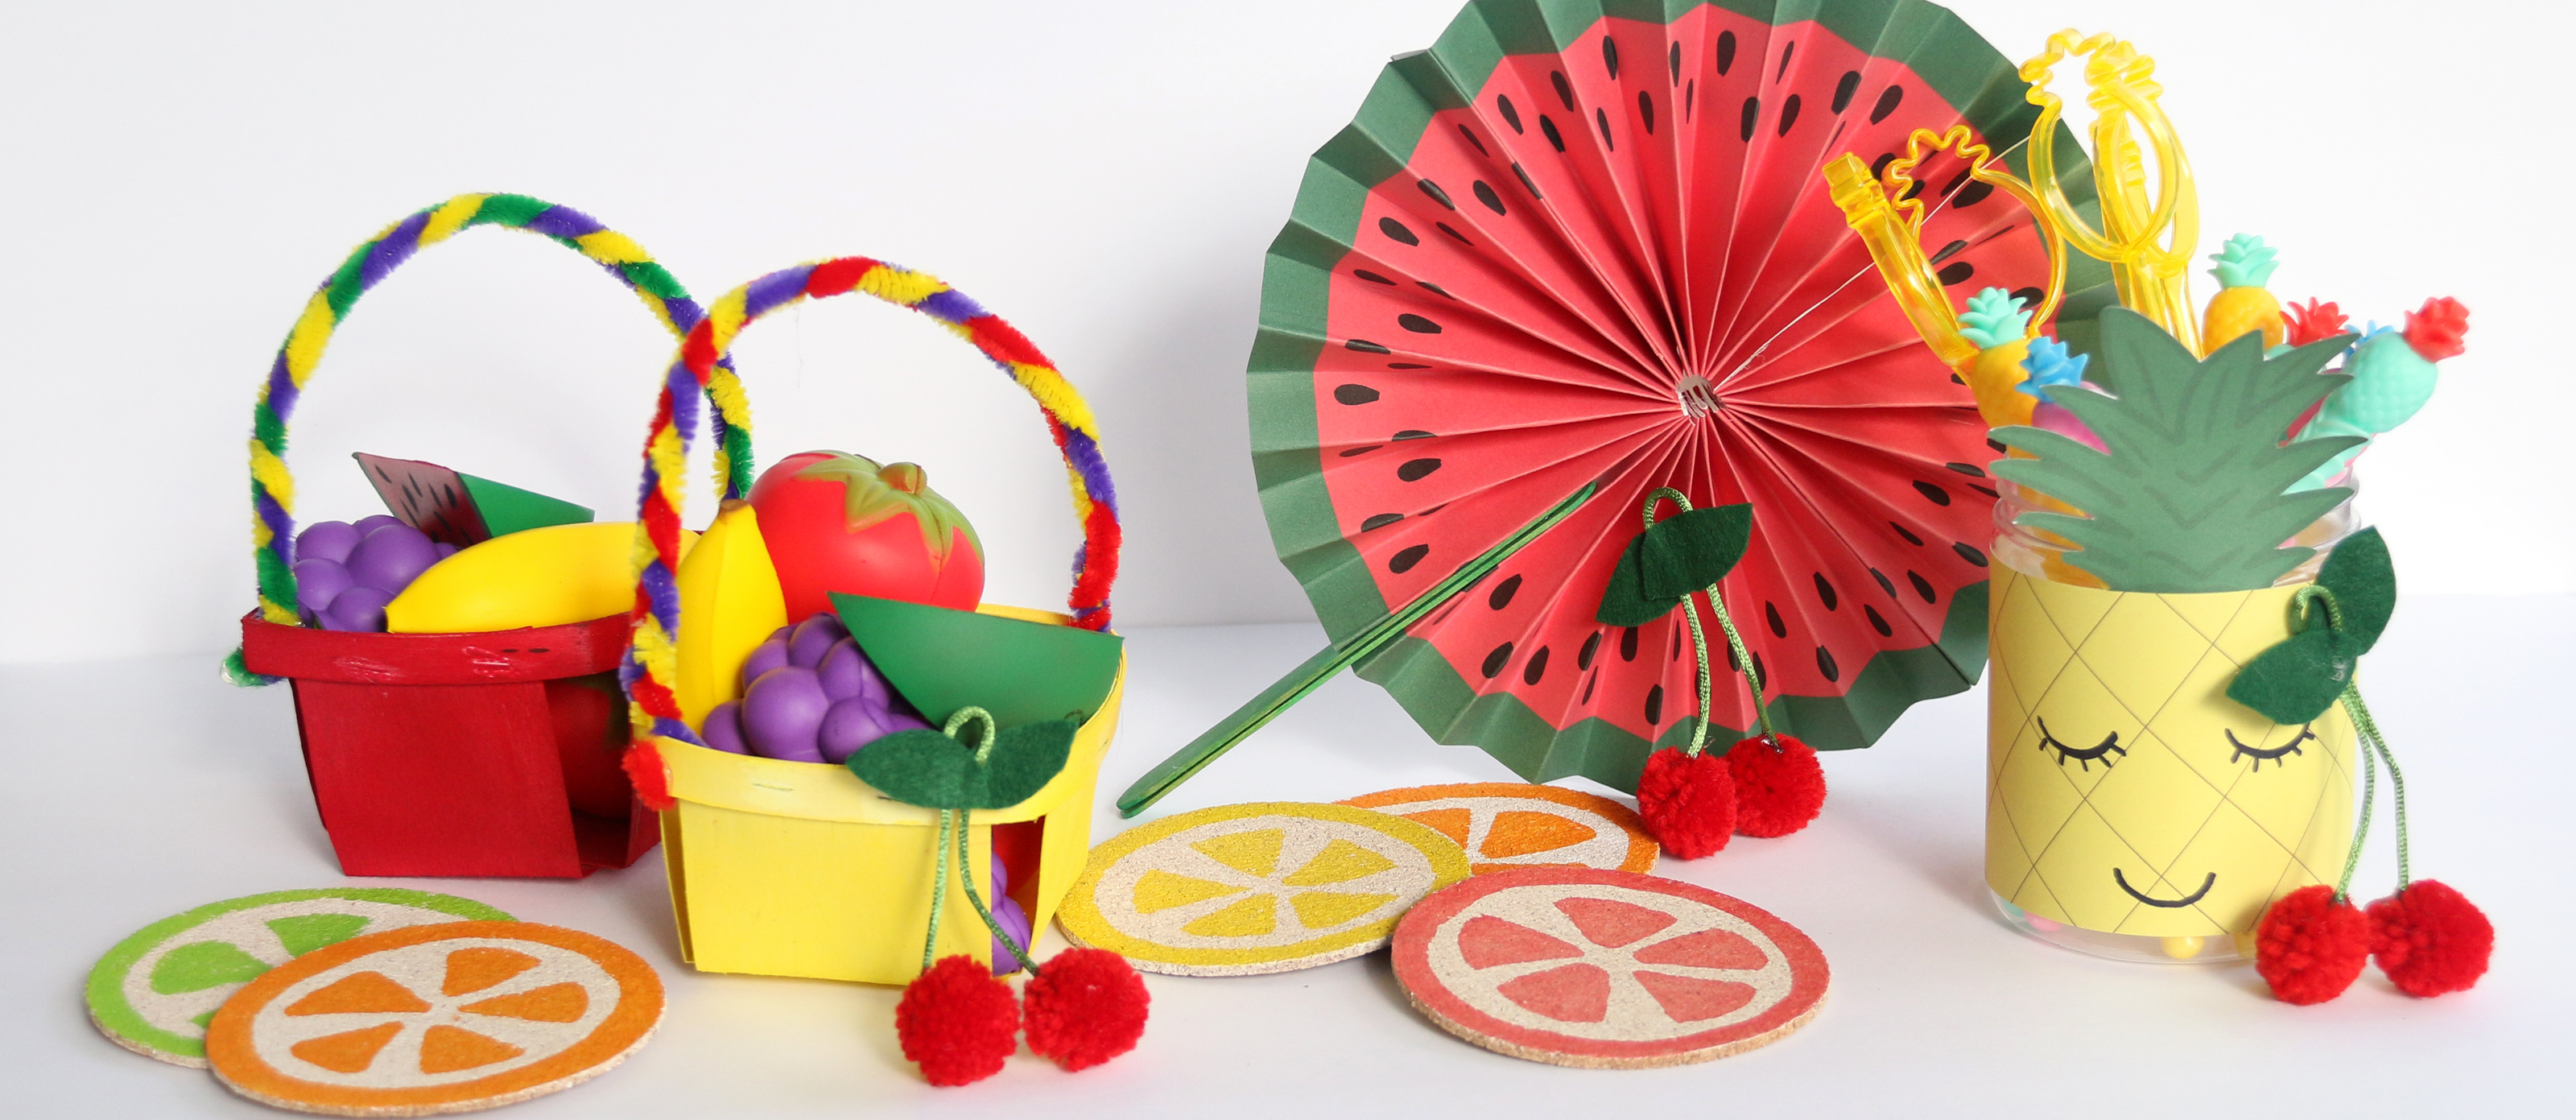 Fun Fruit Crafts for Kids